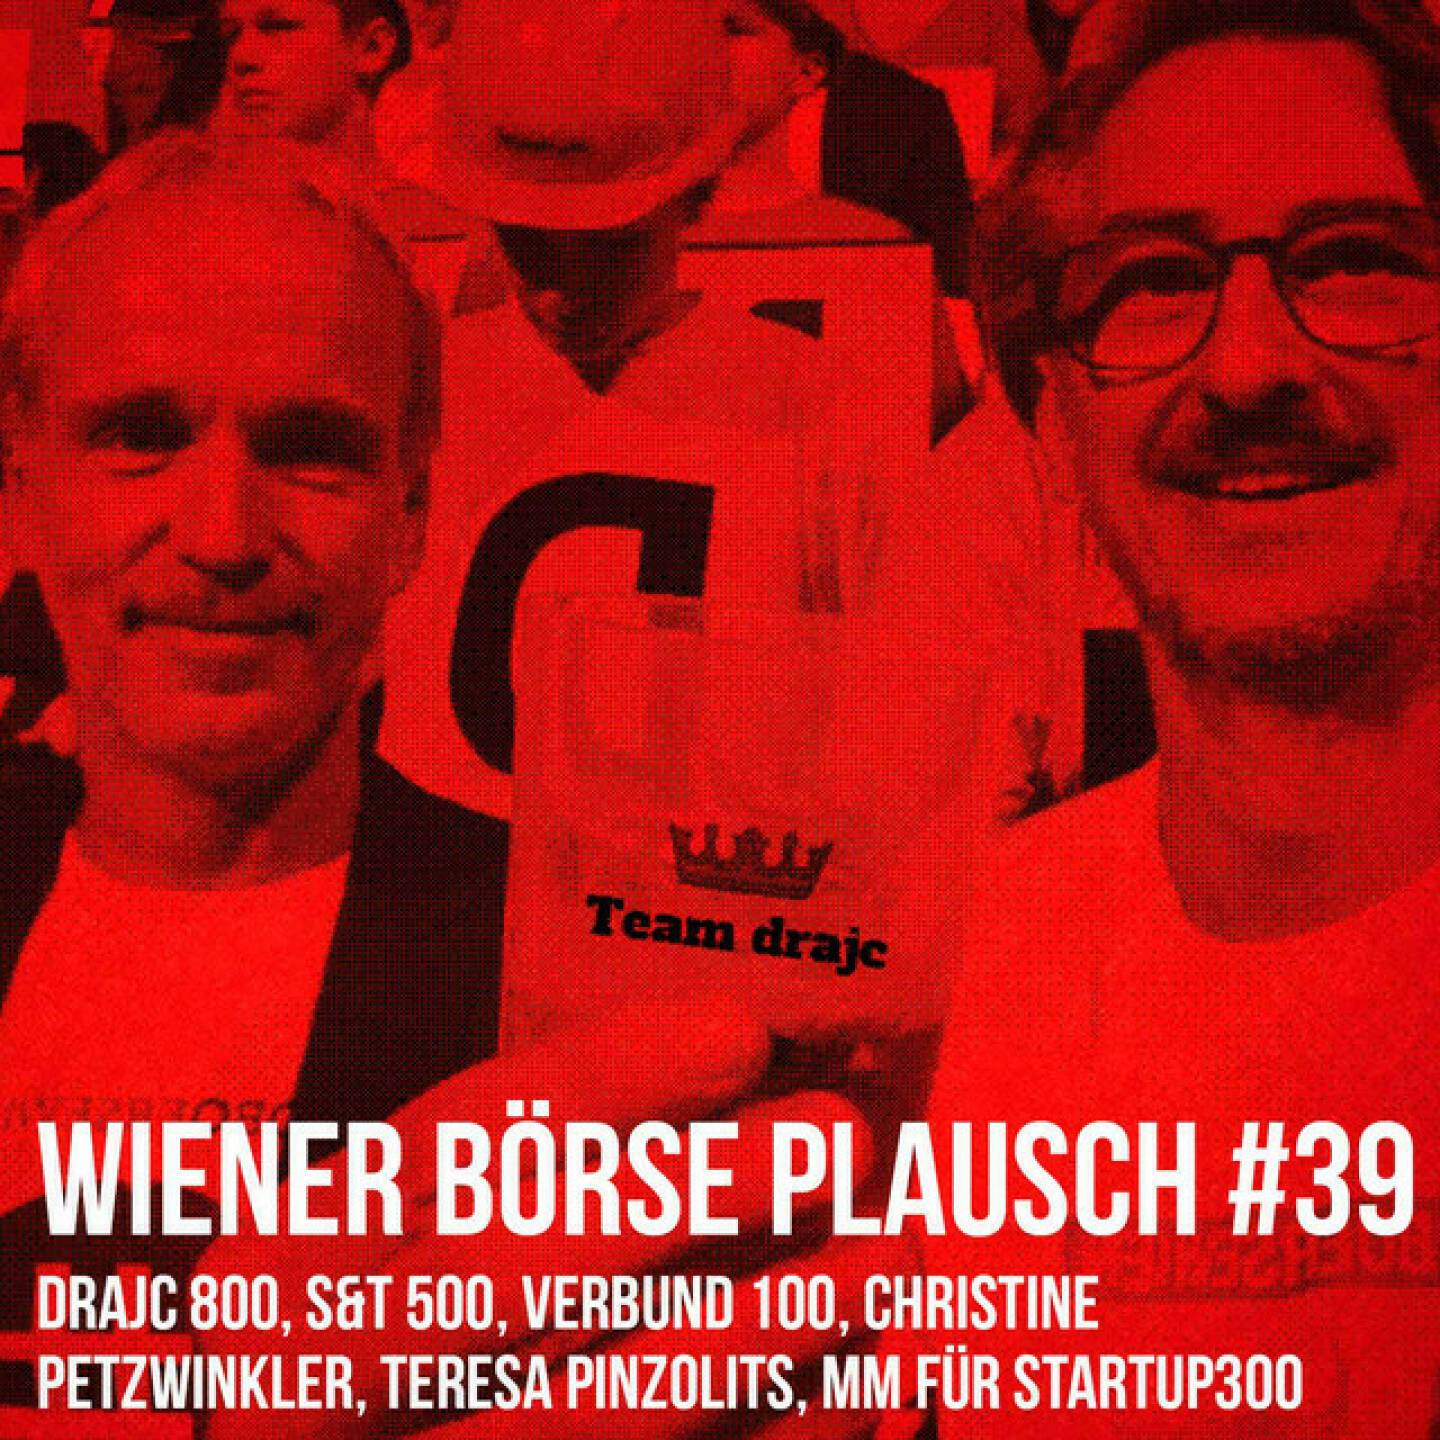 https://open.spotify.com/episode/4m7IGOPIitBDi531Uytz8U
Wiener Börse Plausch #39: drajc 800, S&T 500, Verbund 100, Christine Petzwinkler, Teresa Pinzolits, MM für startup300 - <br><p>Team drajc, das sind die Börse Social Network Eigentümer Christian Drastil und Josef Chladek, quatscht in Wiener Börse Plausch #39 wieder über das aktuelle Geschehen in Wien. Heute sprechen wir über den Jump der <strong>Verbund</strong> über 100, was auch einen der besten Handelstage des Jahres im <strong>ATX TR</strong> auslöst. Weiters <strong>Herba Chemosan</strong>, <strong>Varta</strong>, <strong>Christine Petzwinkler</strong> und <strong>Teresa Pinzolits</strong>. Aktienseitig erwähnen wir <strong>Andritz</strong>, <strong>Immofnanz</strong> und <strong>EVN</strong>. Bei <strong>startup300</strong> bitten wir, auf eine Delisting zu Lasten der Aktionäre zu verzichten, schlagen ein Crowdfunding für die Market Maker-Kosten vor. </p>
<p>_Diashow Impflogos: <a href=http://www.photaq.com/page/index/4000>http://www.photaq.com/page/index/4000</a> </p>
<p>Die Dezember-Folgen vom Wiener Börse Plausch sind präsentiert von der <strong>Rosinger Group</strong>, die sich mit einem Angebot an Listing-Interessierte UnternehmerInnen richtet und einen Rekord im Rosgix feiern kann._</p>
<p><em><strong>Risikohinweis</strong>: Die hier veröffentlichten Gedanken sind weder als Empfehlung noch als ein Angebot oder eine Aufforderung zum An- oder Verkauf von Finanzinstrumenten zu verstehen und sollen auch nicht so verstanden werden. Sie stellen lediglich die persönliche Meinung der Podcastmacher dar. Der Handel mit Finanzprod ukten unterliegt einem Risiko. Sie können Ihr eingesetztes Kapital verlieren.</em></p>